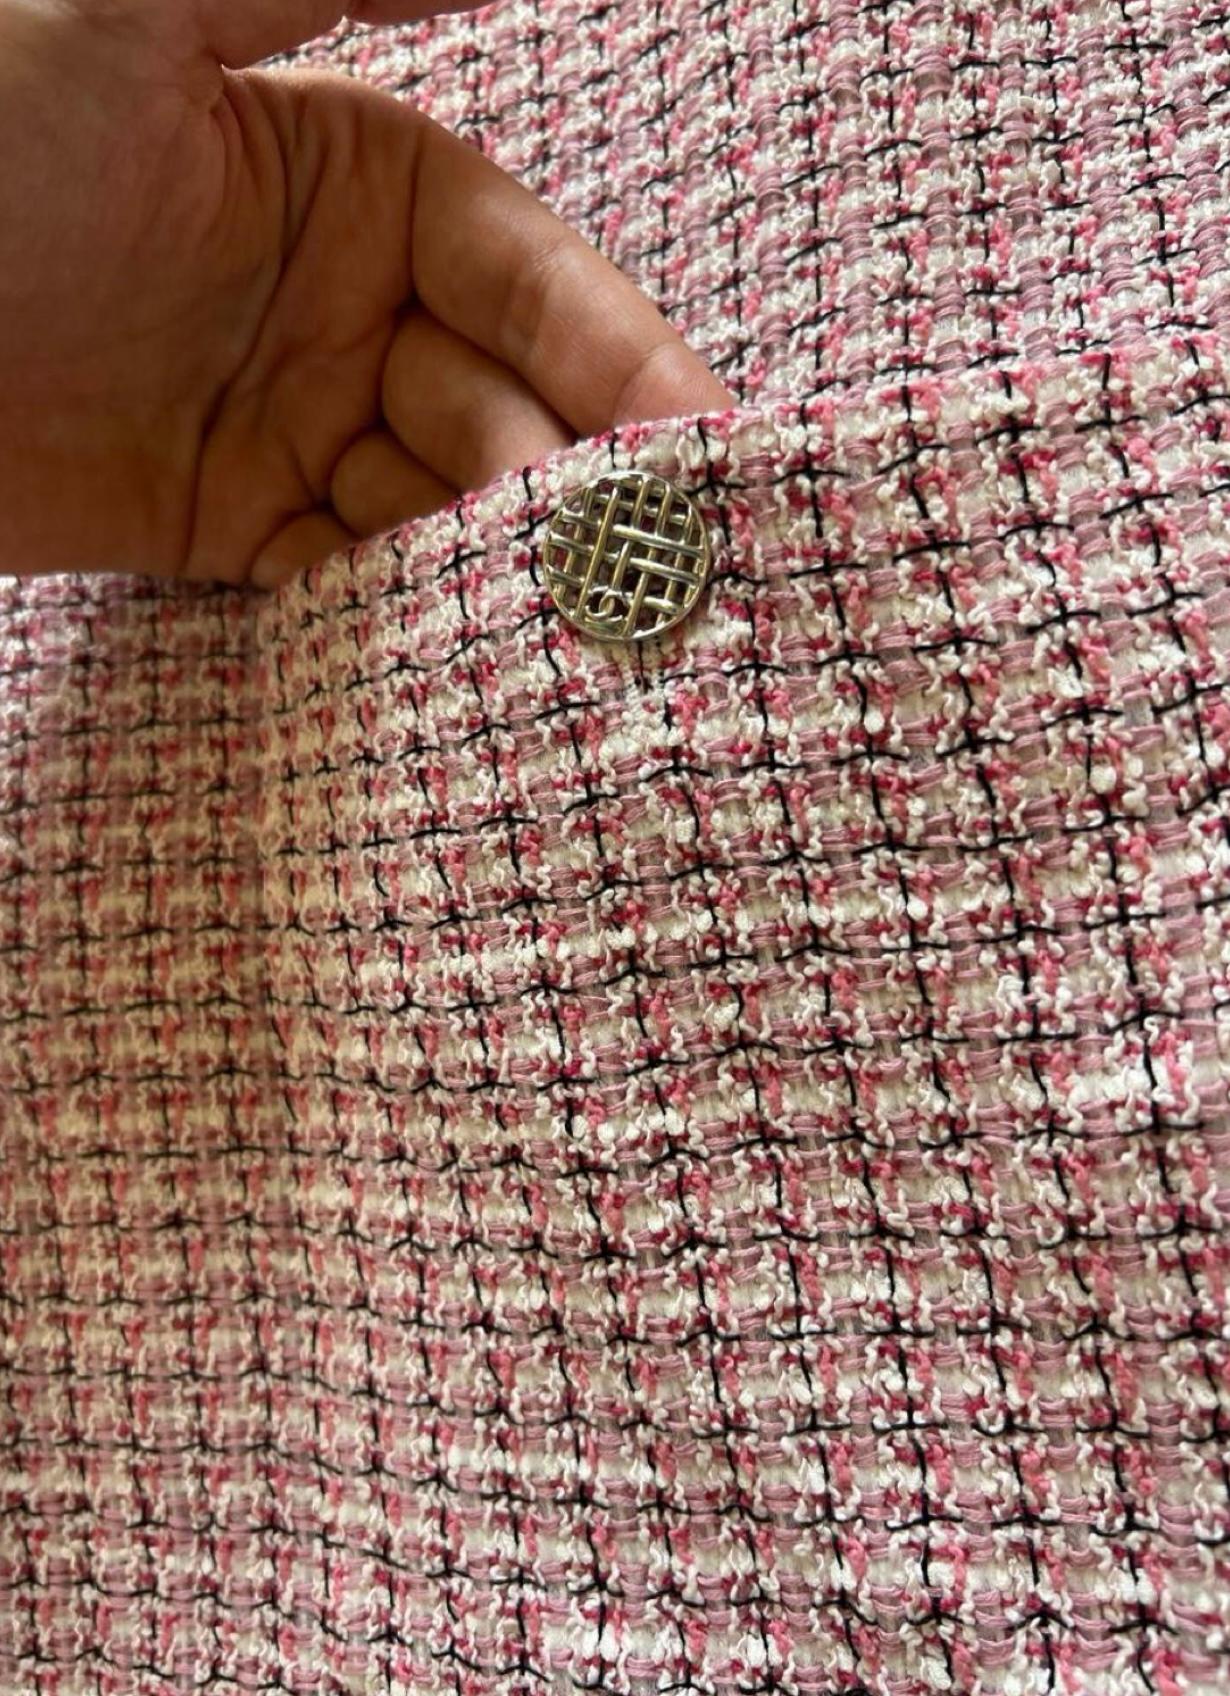 Fliederfarbener Chanel Tweedanzug mit CC-Logo-Knöpfen an den Taschen.
Tonales Seidenfutter, Größe 46 FR. Ausgezeichneter Zustand.